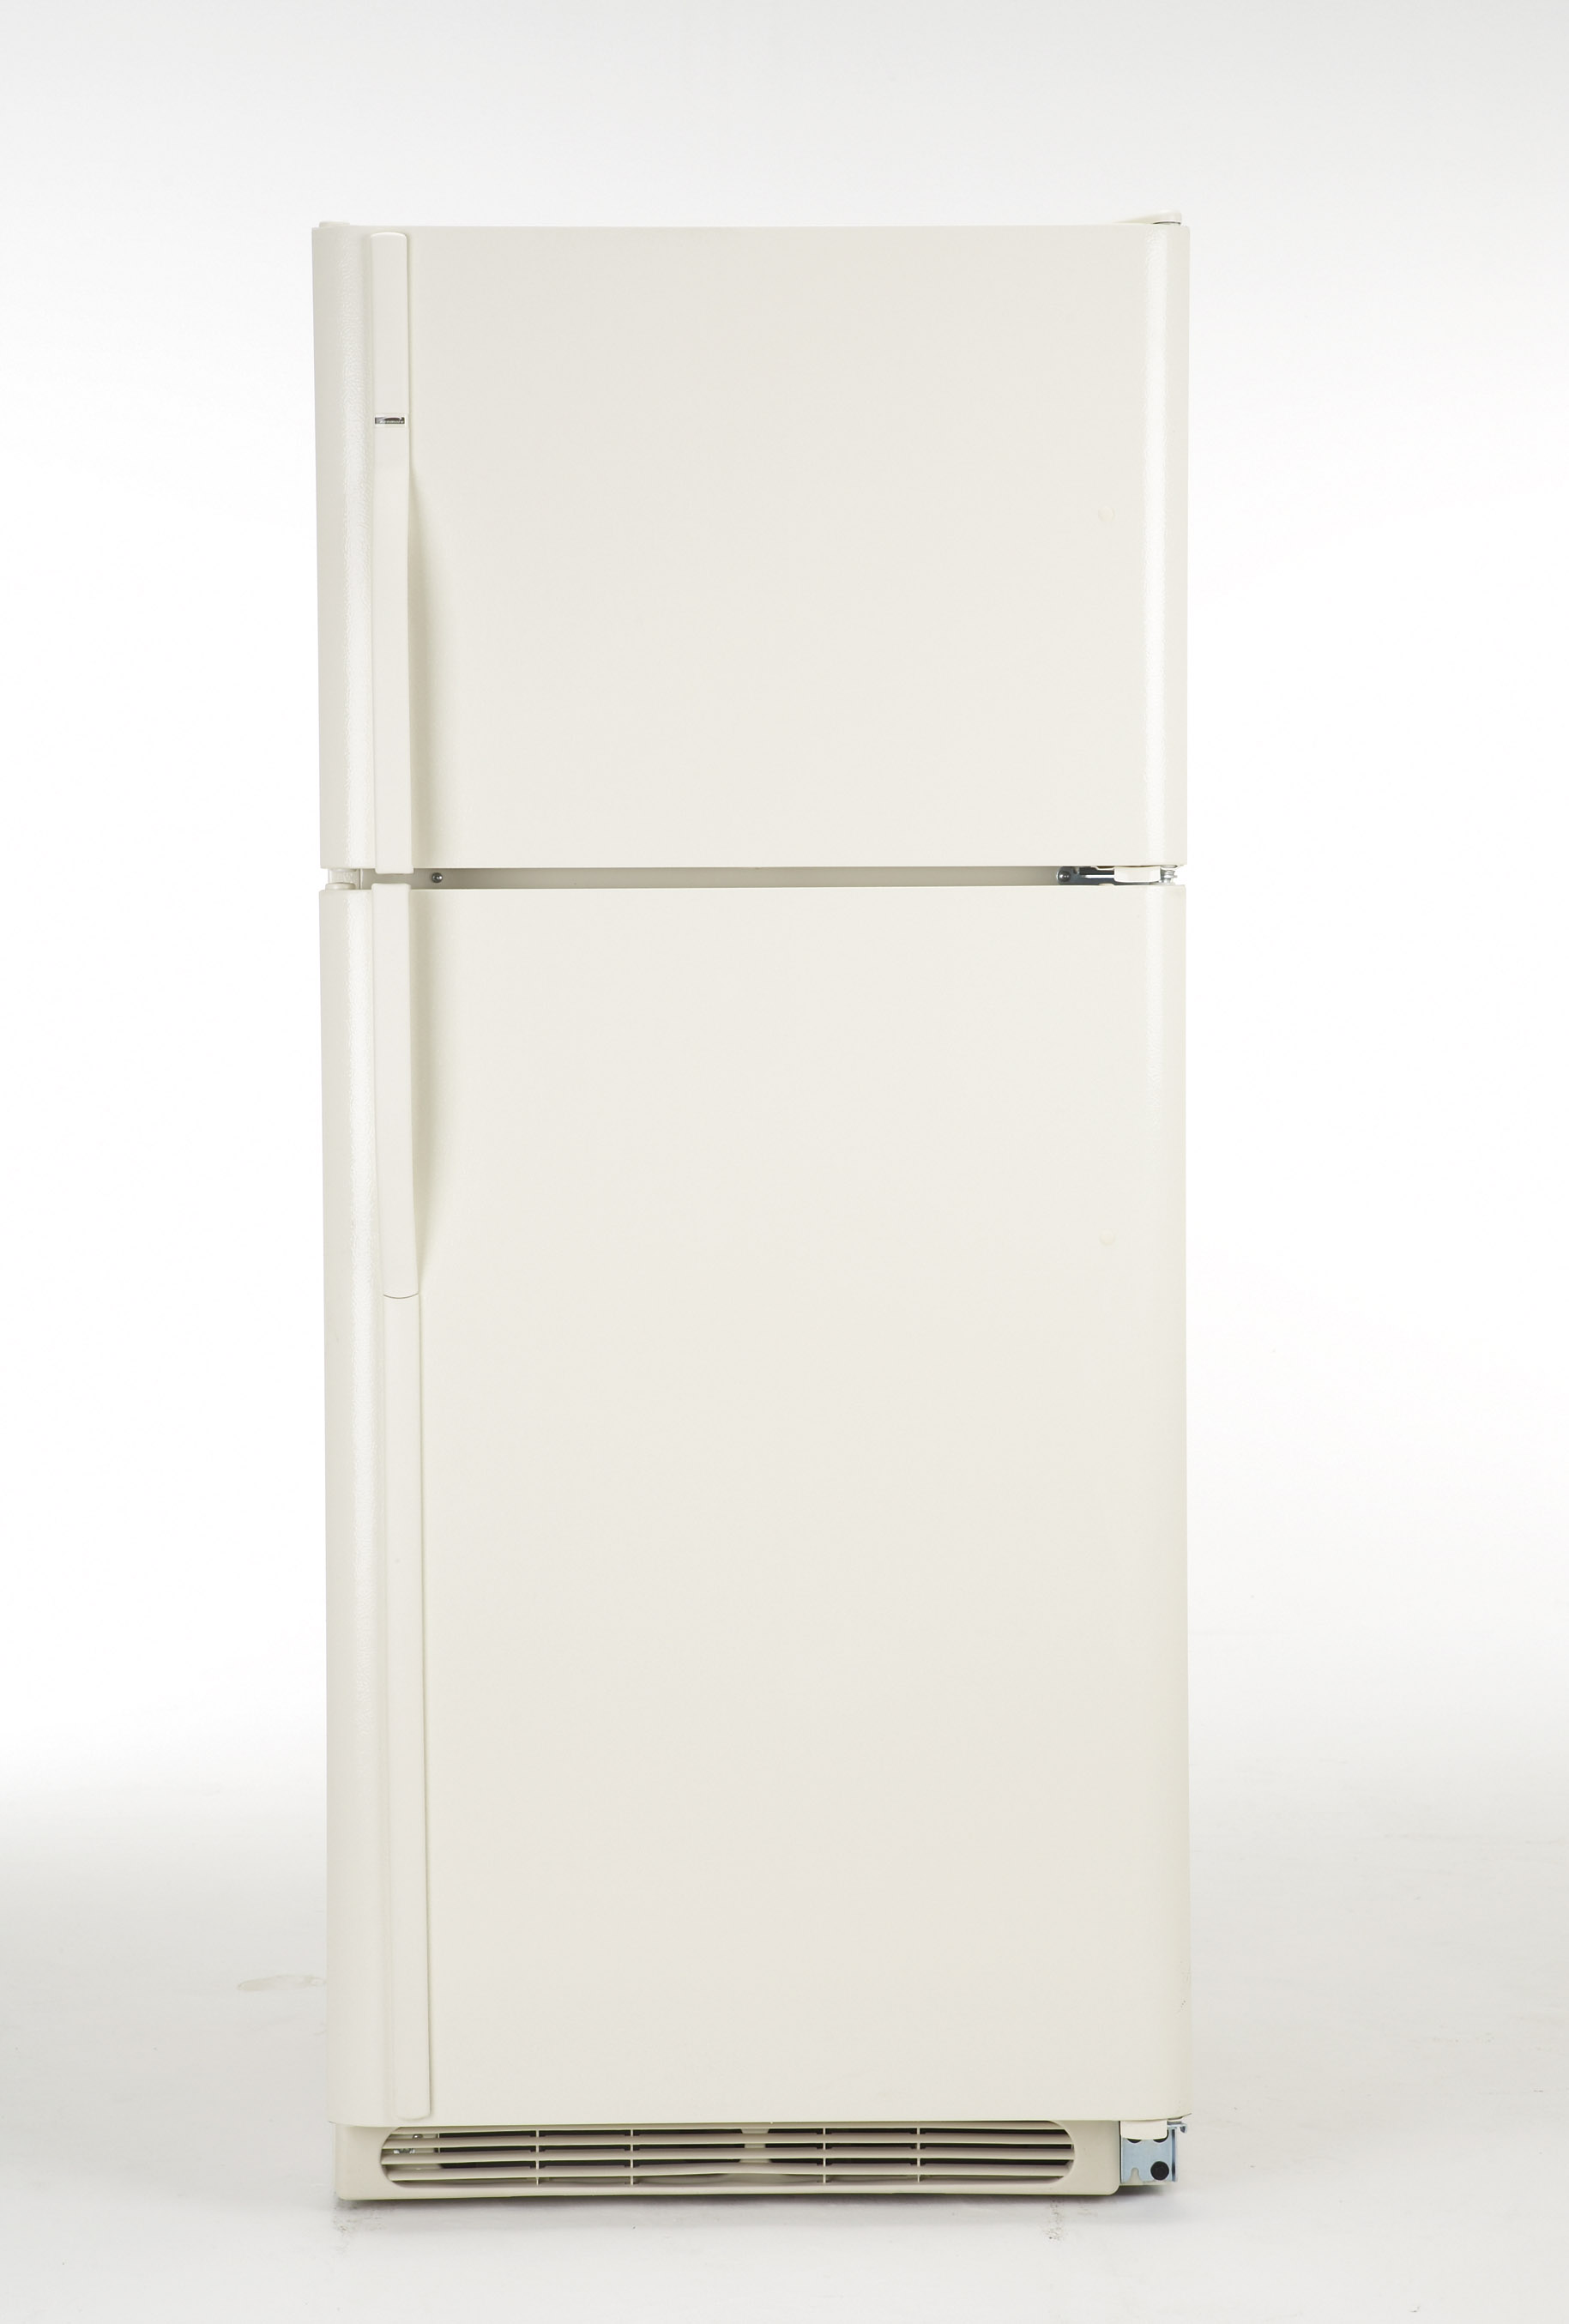 Kenmore Refrigerator Model 253.69934704 Parts & Repair Help Repair